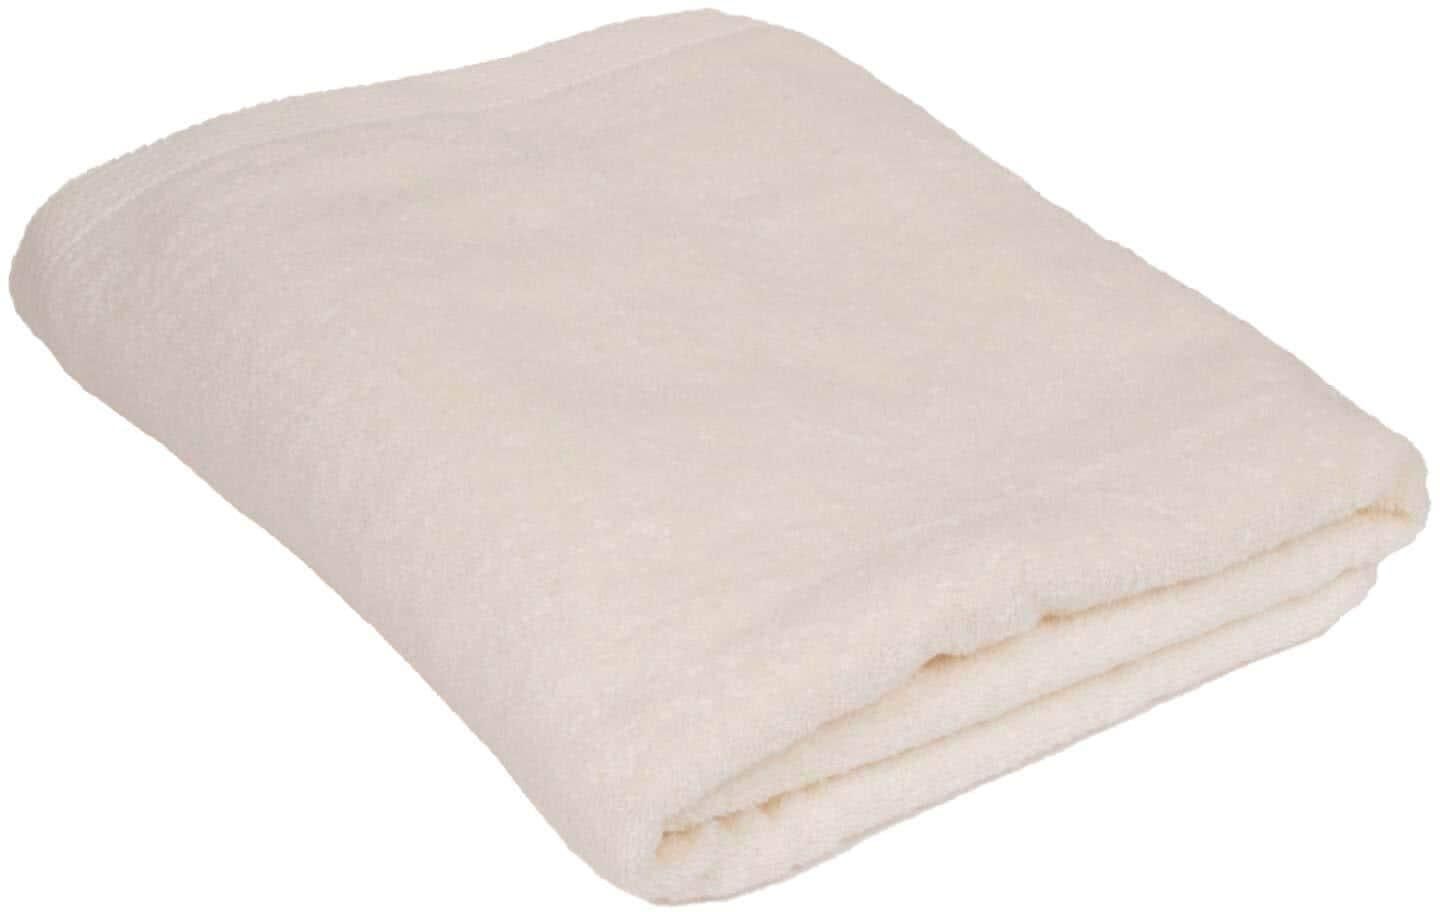 First 1 Bath Sheet - 90*150cm - Cream S23